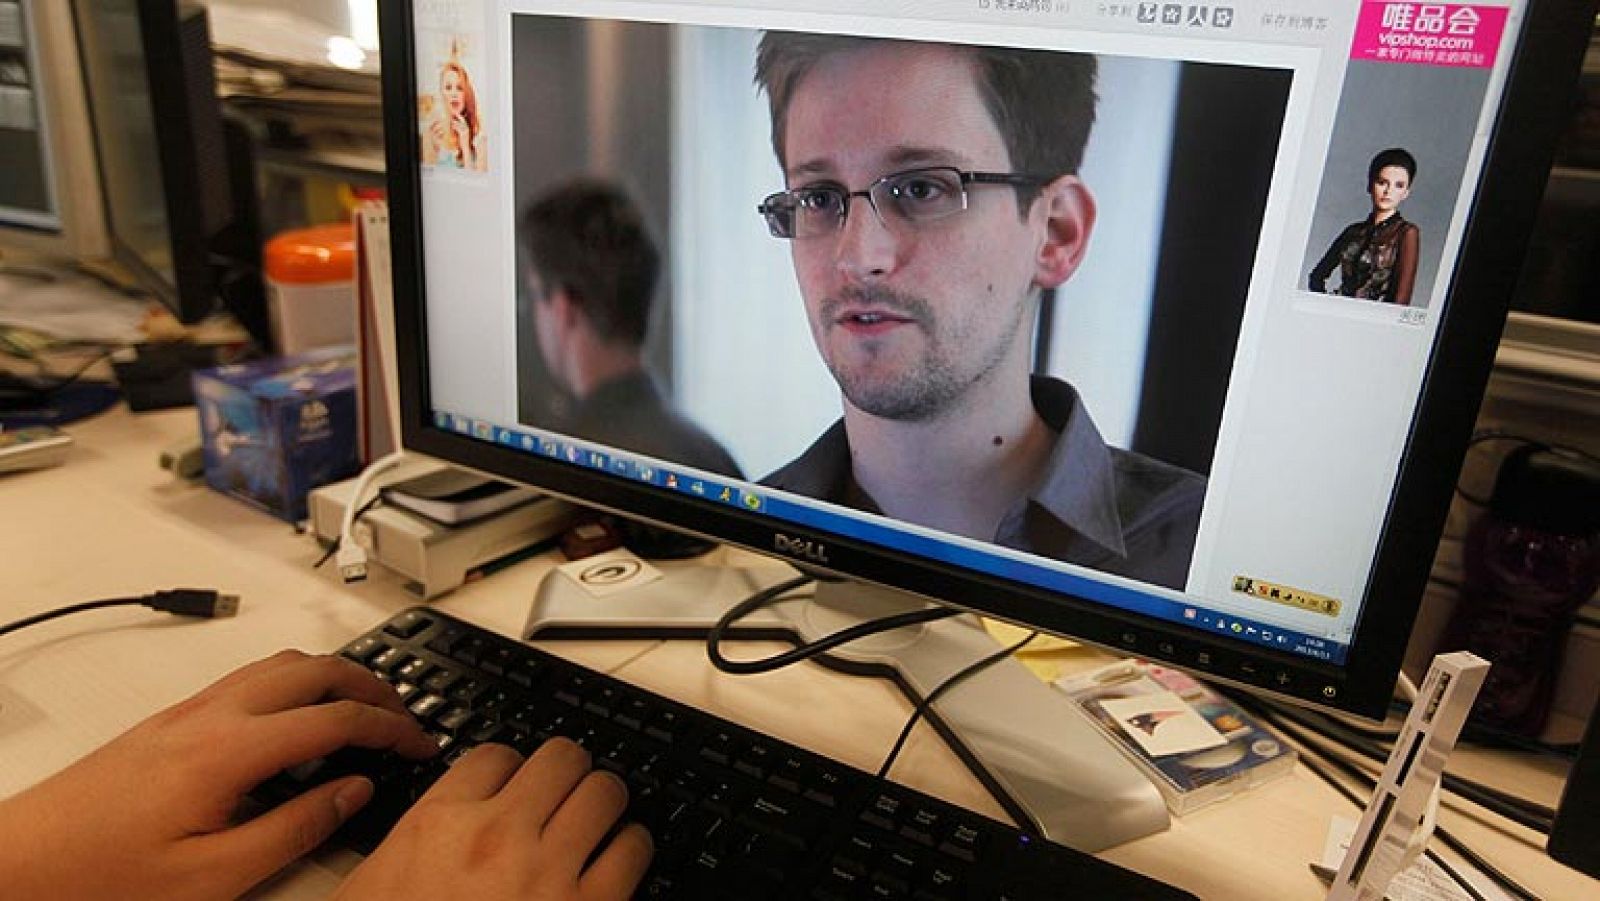 La UE pedirá explicaciones a EE.UU. sobre el espionaje revelado por Snowden